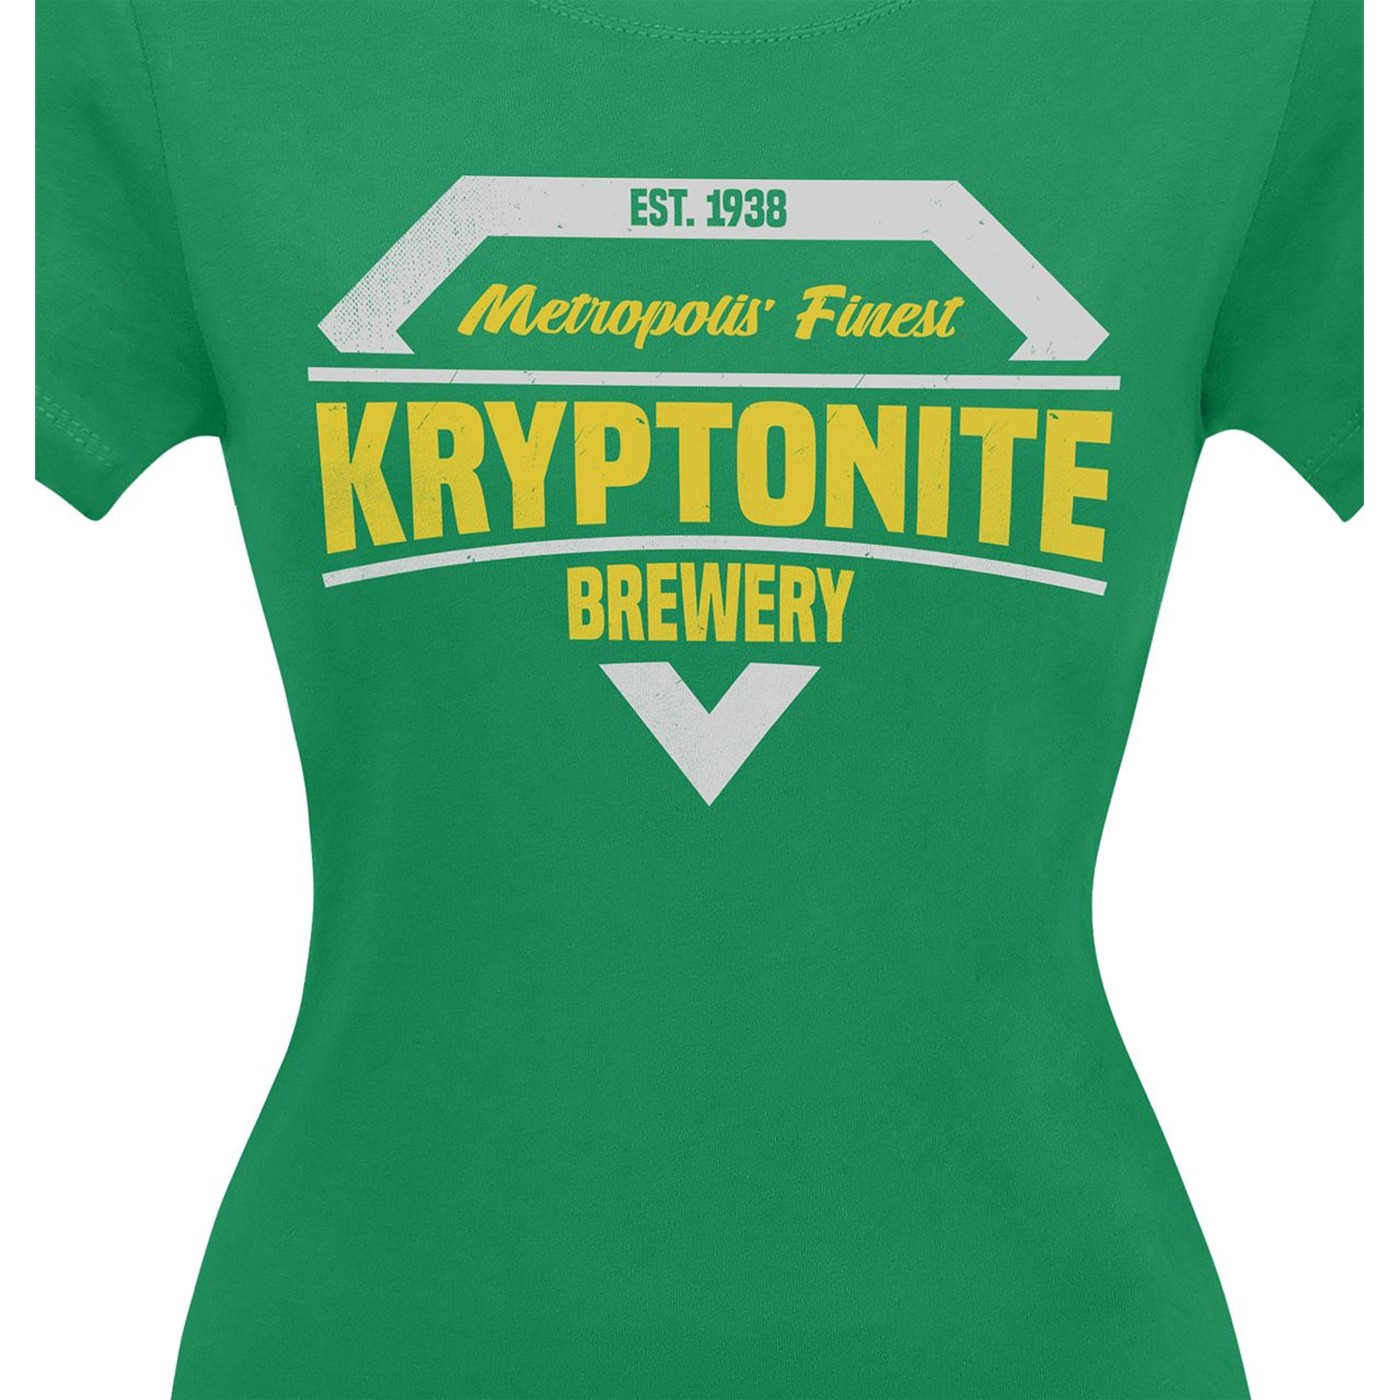 Kryptonite Brewery Women's T-Shirt